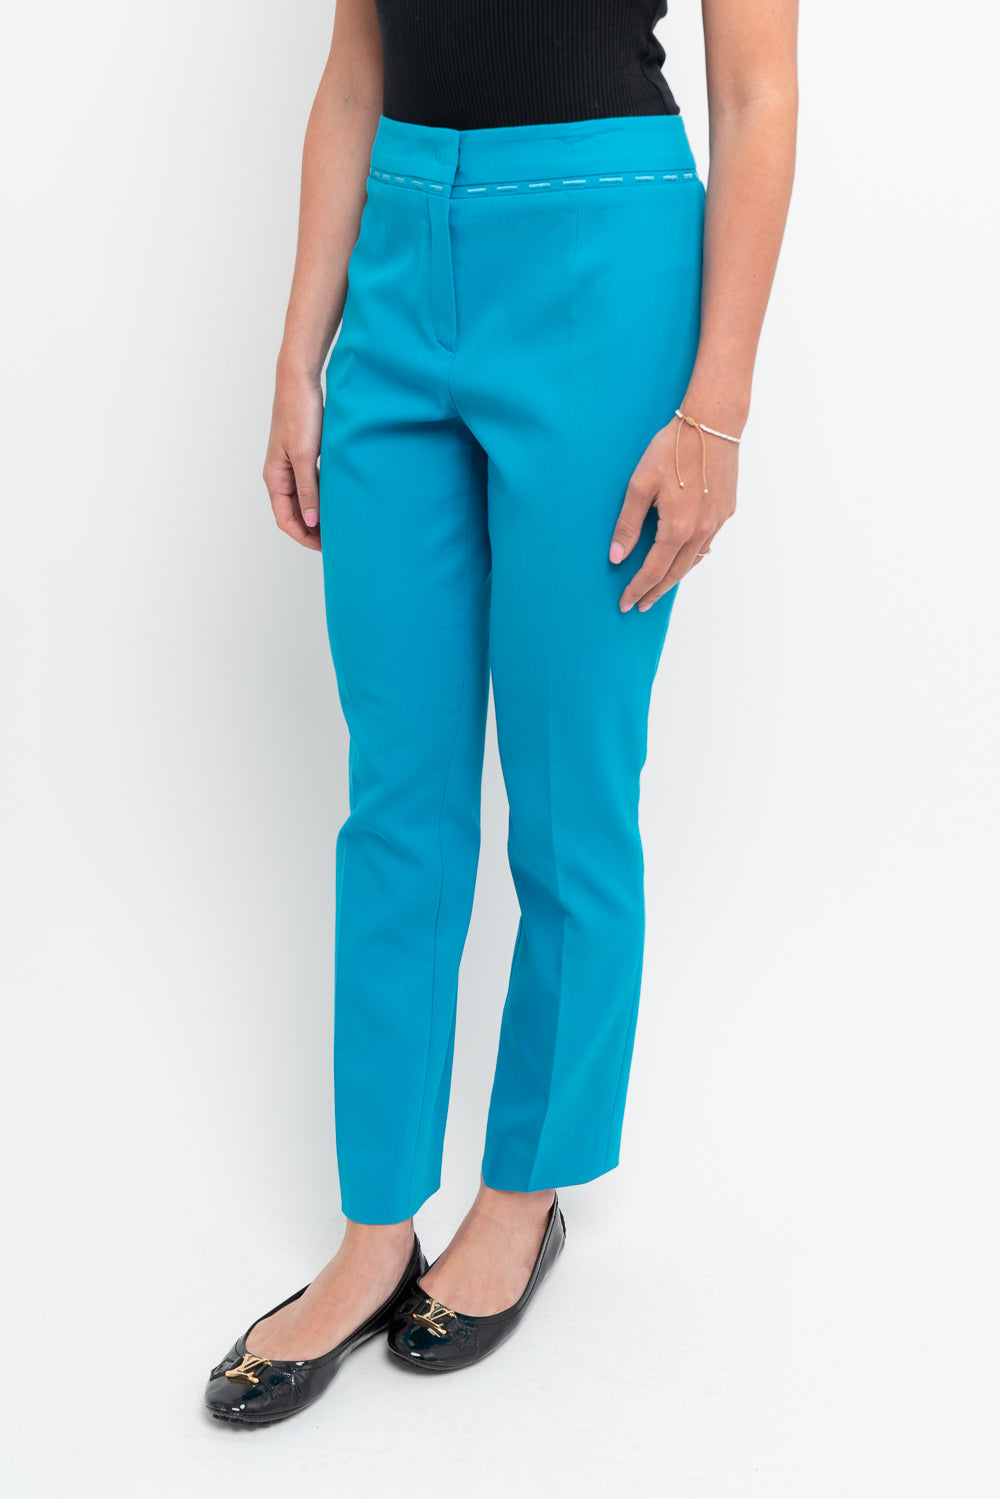 Escada Turquoise Pants 36 – Once More Luxury